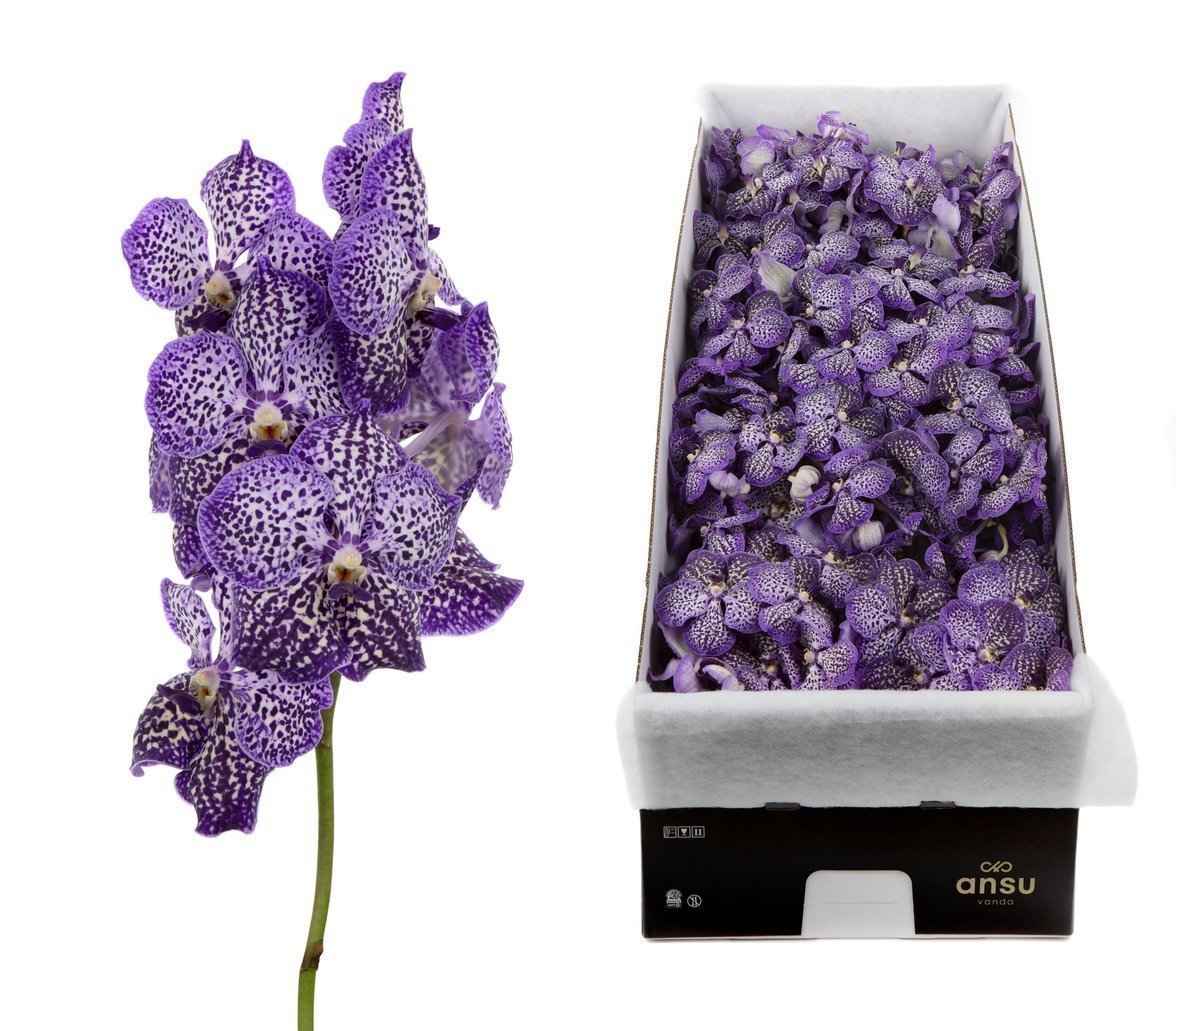 Срезанные цветы оптом Vanda sunanda royal purple per stem от 4шт. из Голландии с доставкой по России